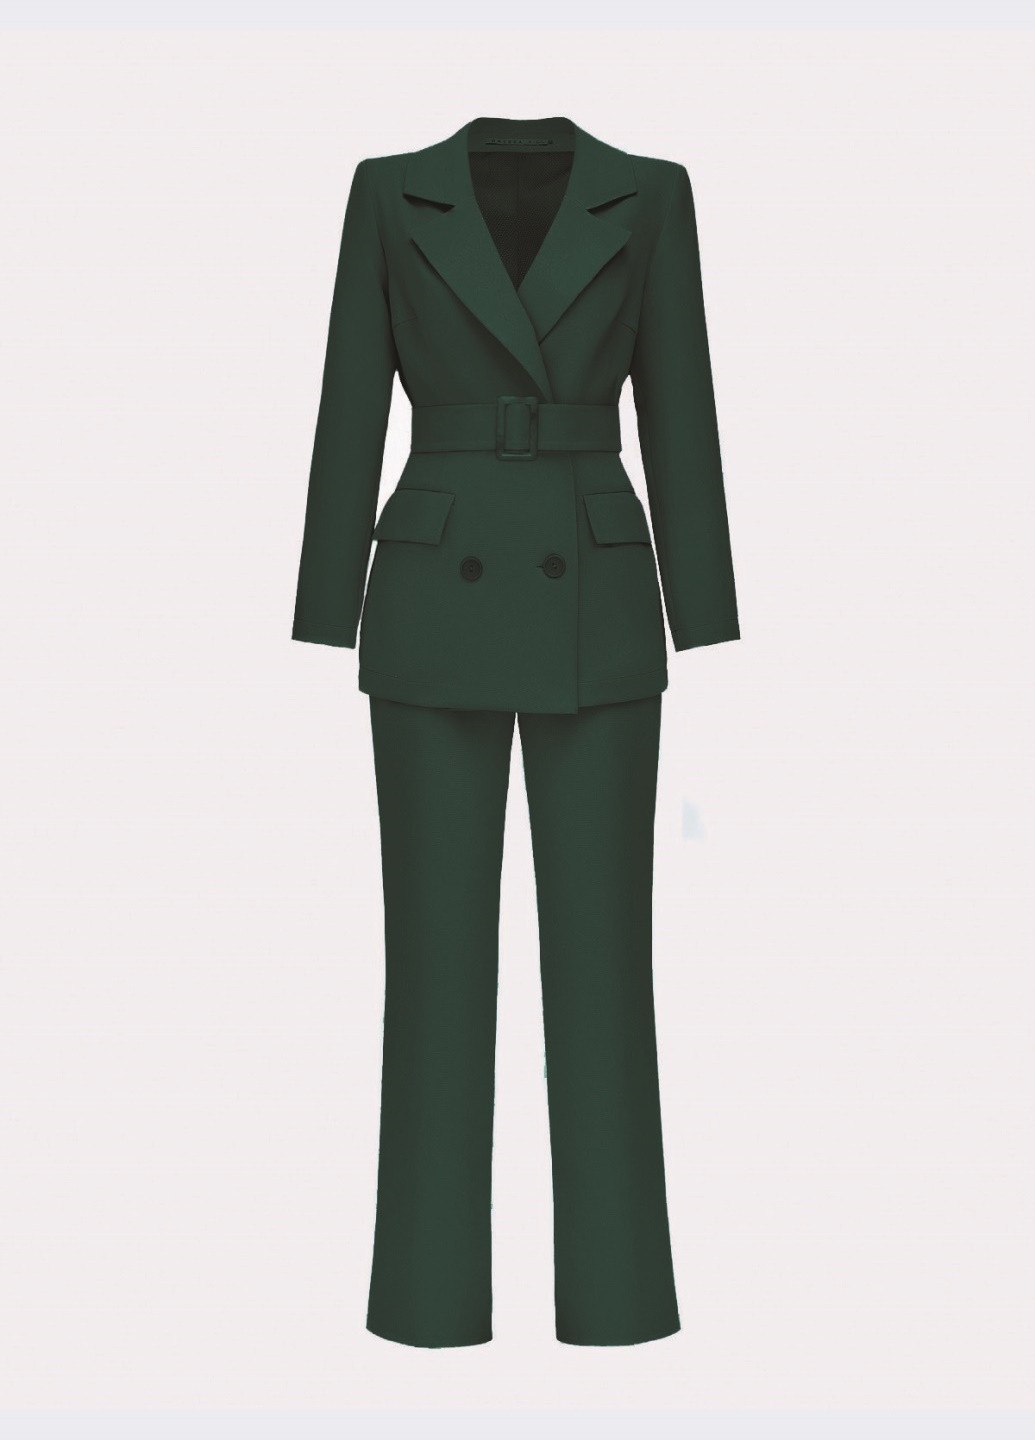 классический брючный костюм темно-зеленого цвета с пиджаком Dressa (258449513)